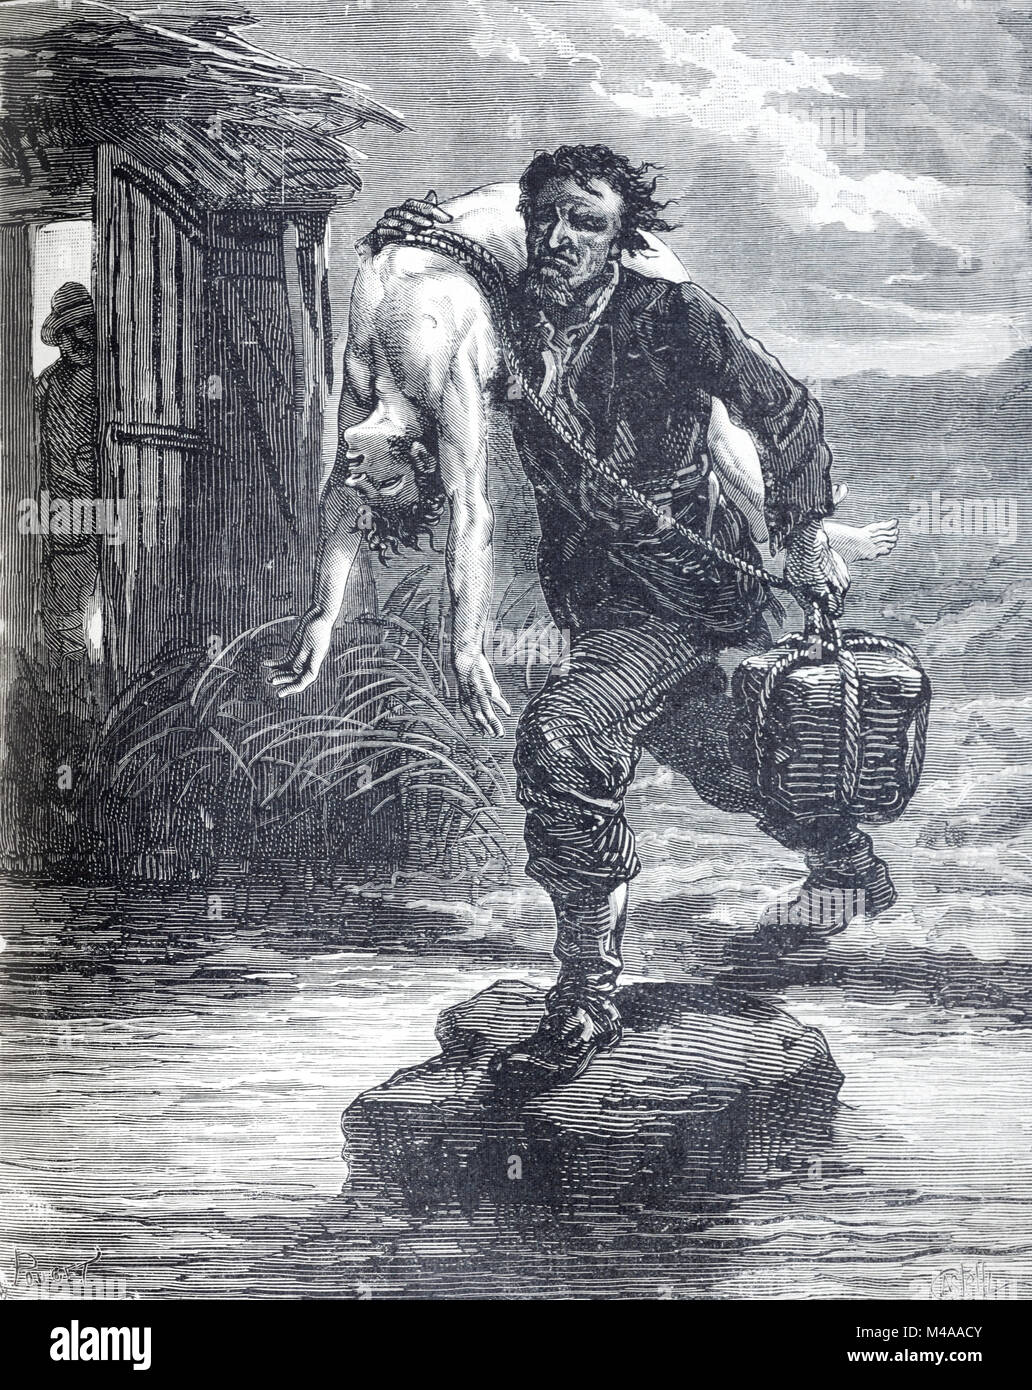 Le meurtre ou la mort par noyade. Un Assassin cherche à se noyer un homme dans la mer en les attachant à lui un lourd rocher ou Pierre poids (Illustration, 1879) Banque D'Images